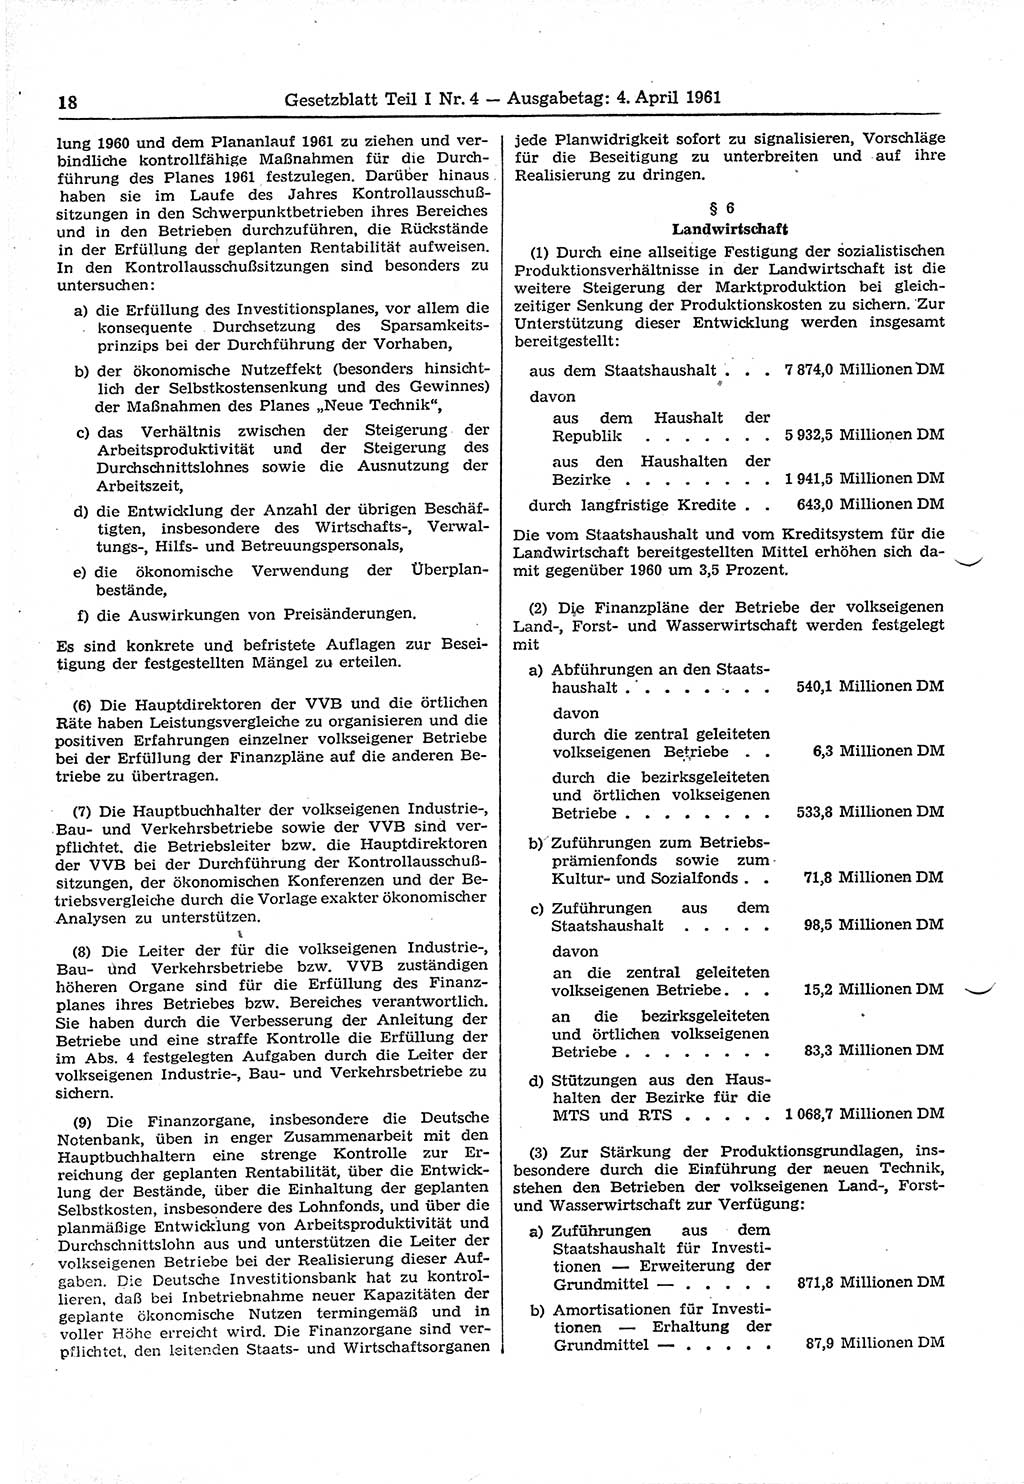 Gesetzblatt (GBl.) der Deutschen Demokratischen Republik (DDR) Teil Ⅰ 1961, Seite 18 (GBl. DDR Ⅰ 1961, S. 18)